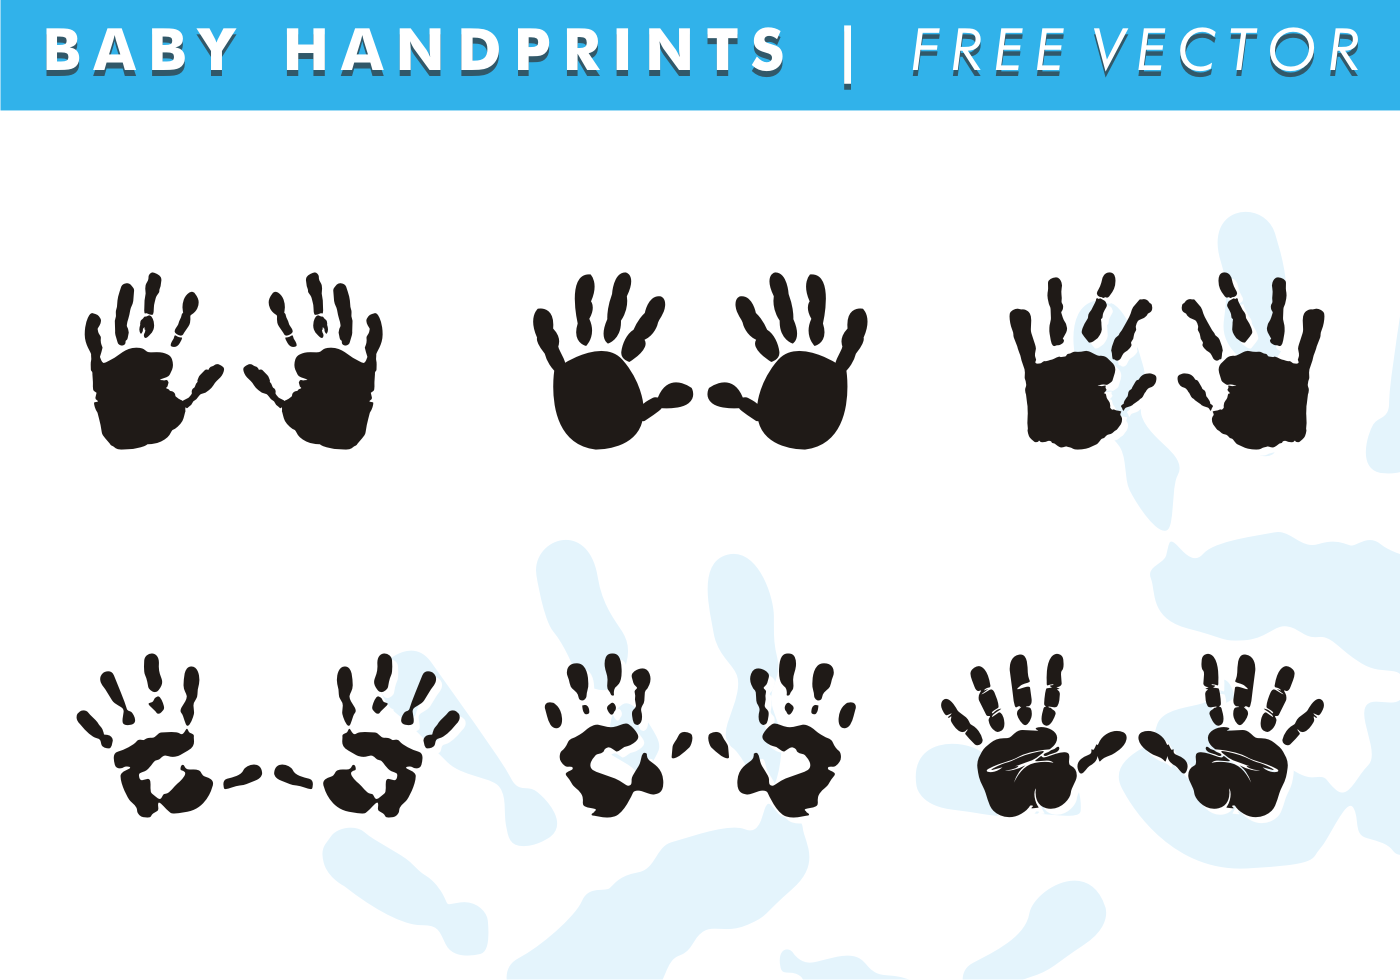 Download Baby Handprints Free Vector 99369 - Download Free Vectors ...